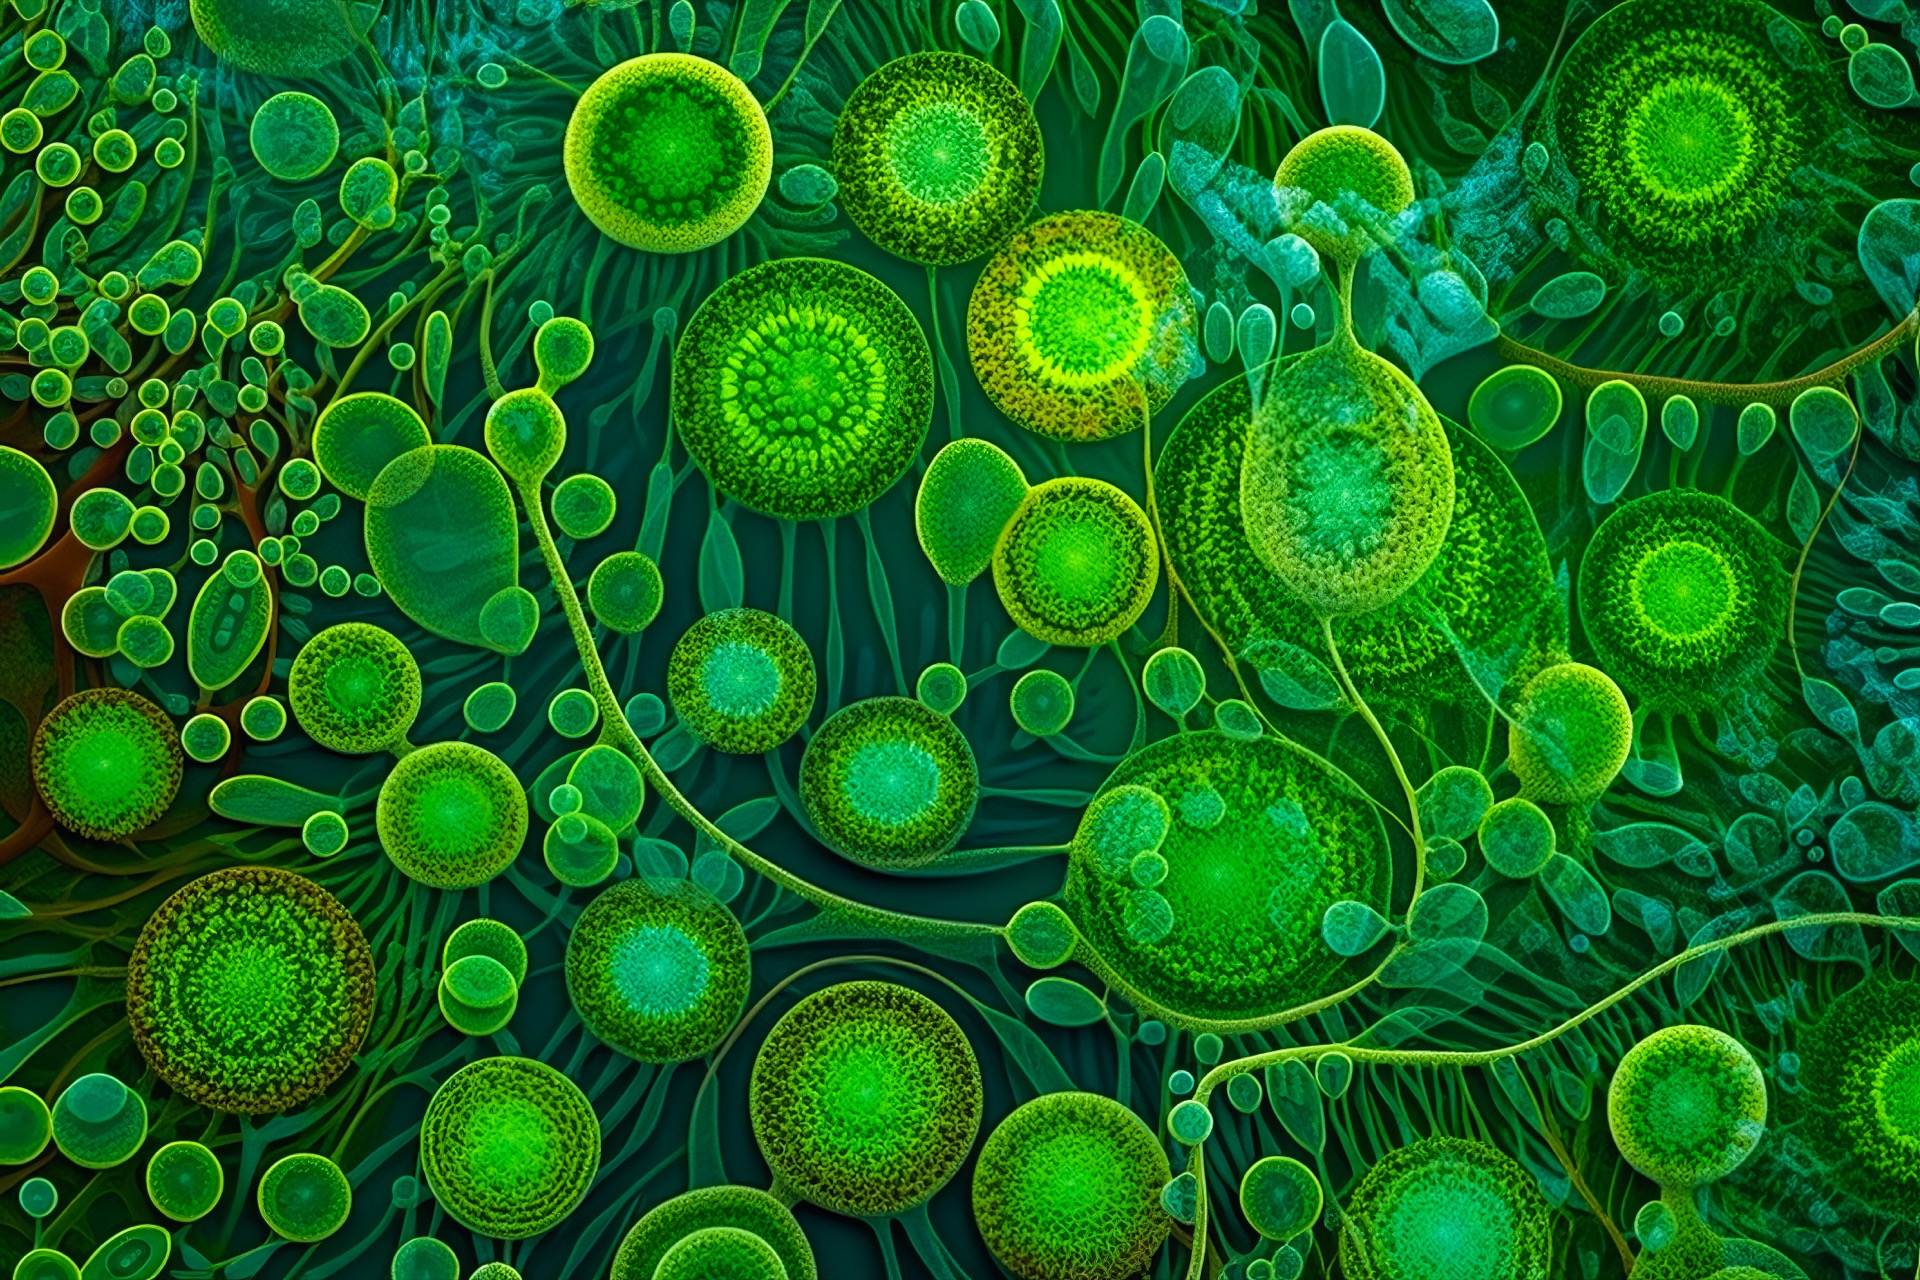 Une vacuole est un organite cellulaire eucaryote, spécifique des cellules végétales et fongiques, qui joue un rôle majeur dans le maintien de l'équilibre des substances essentielles à la vie cellulaire. © XaMaps, Adobe Stock